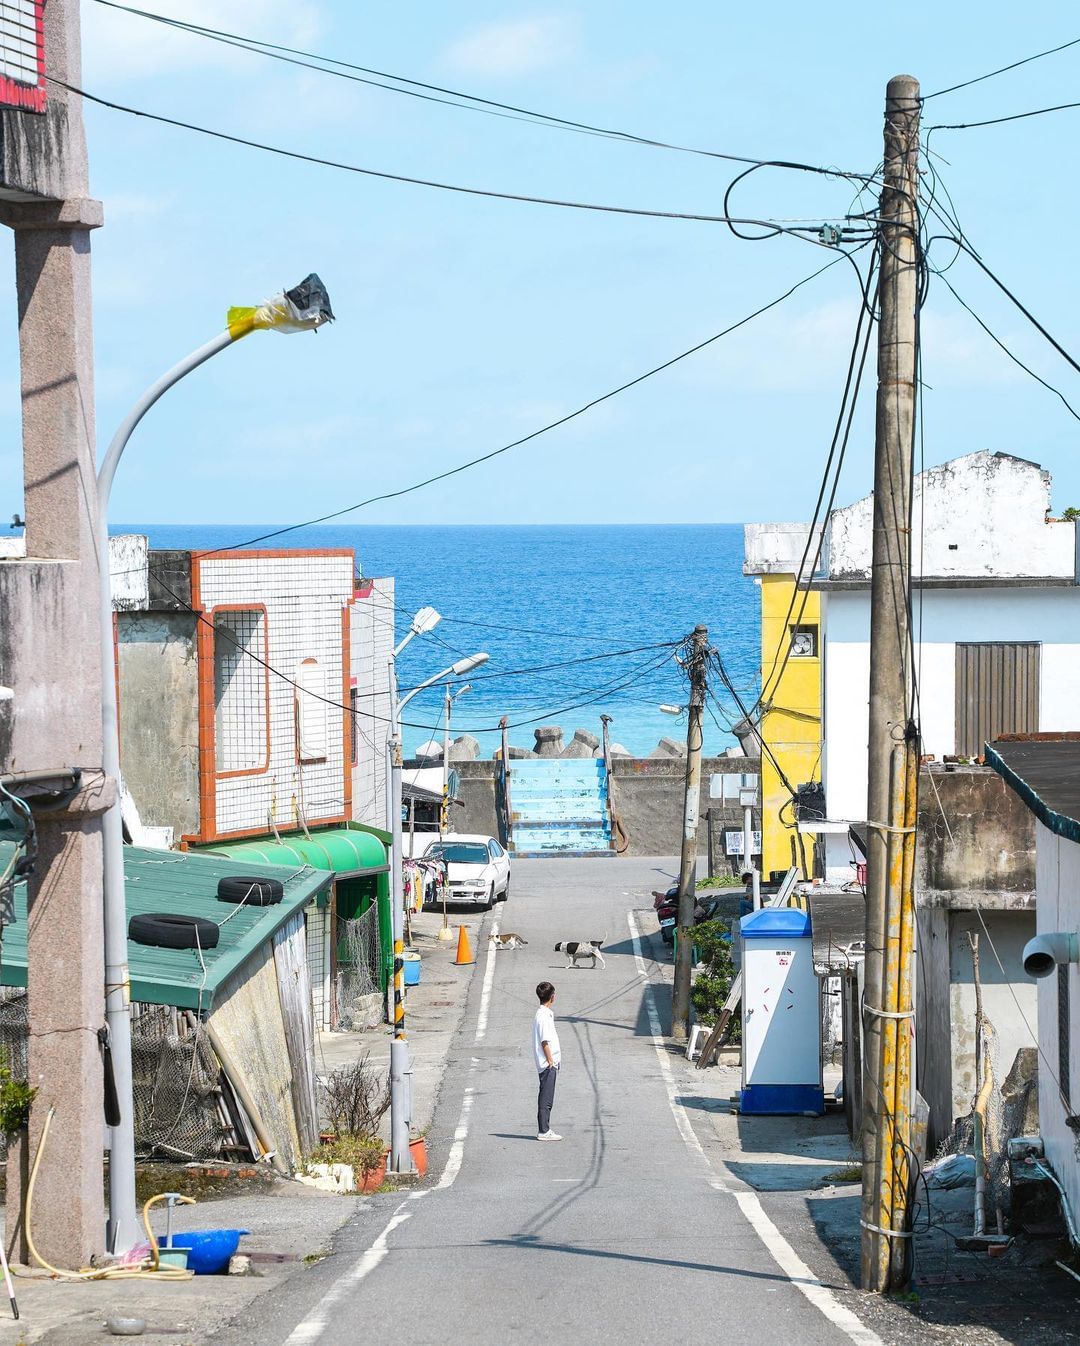 被拉進一片手染的藍色風景裡-感謝 @qiuung  分享美照☺️-歡迎在您的照片標記我們 @ecnsa讓更多人看見台灣最美東海岸在...